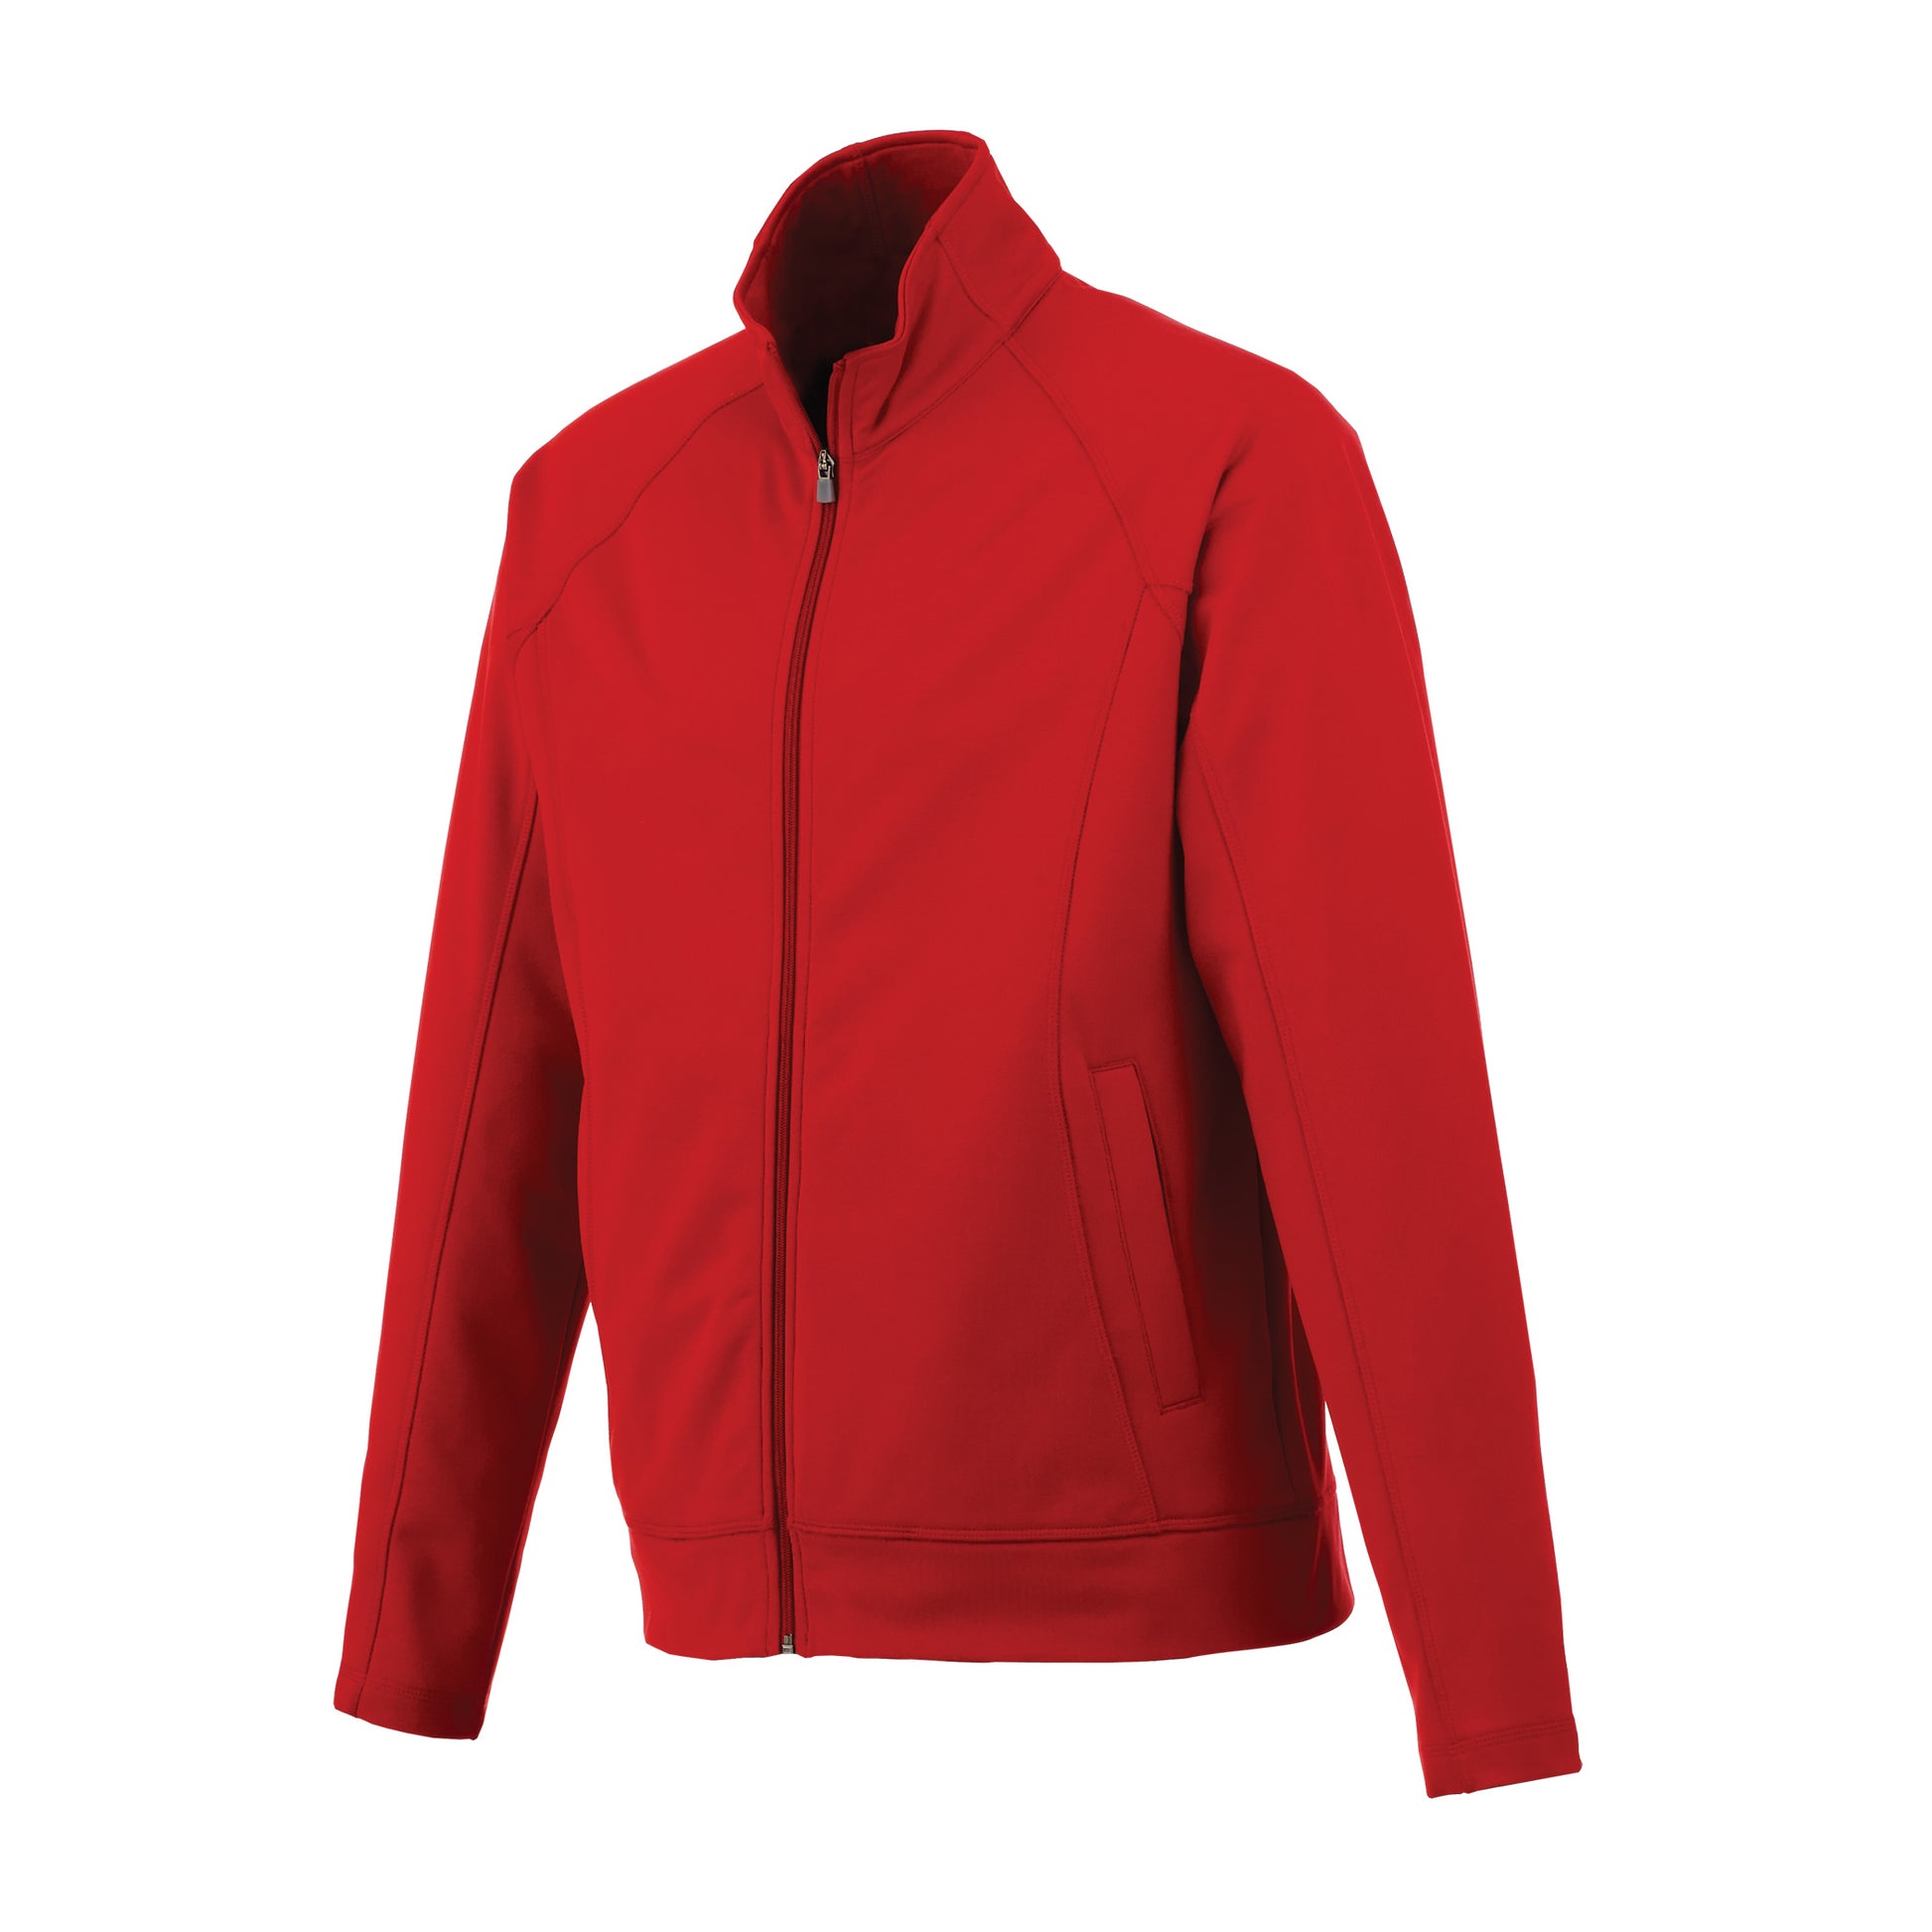 Veste de travail 100 % tricot de jersey pour homme Uniformes Sélect #18117 rouge côté